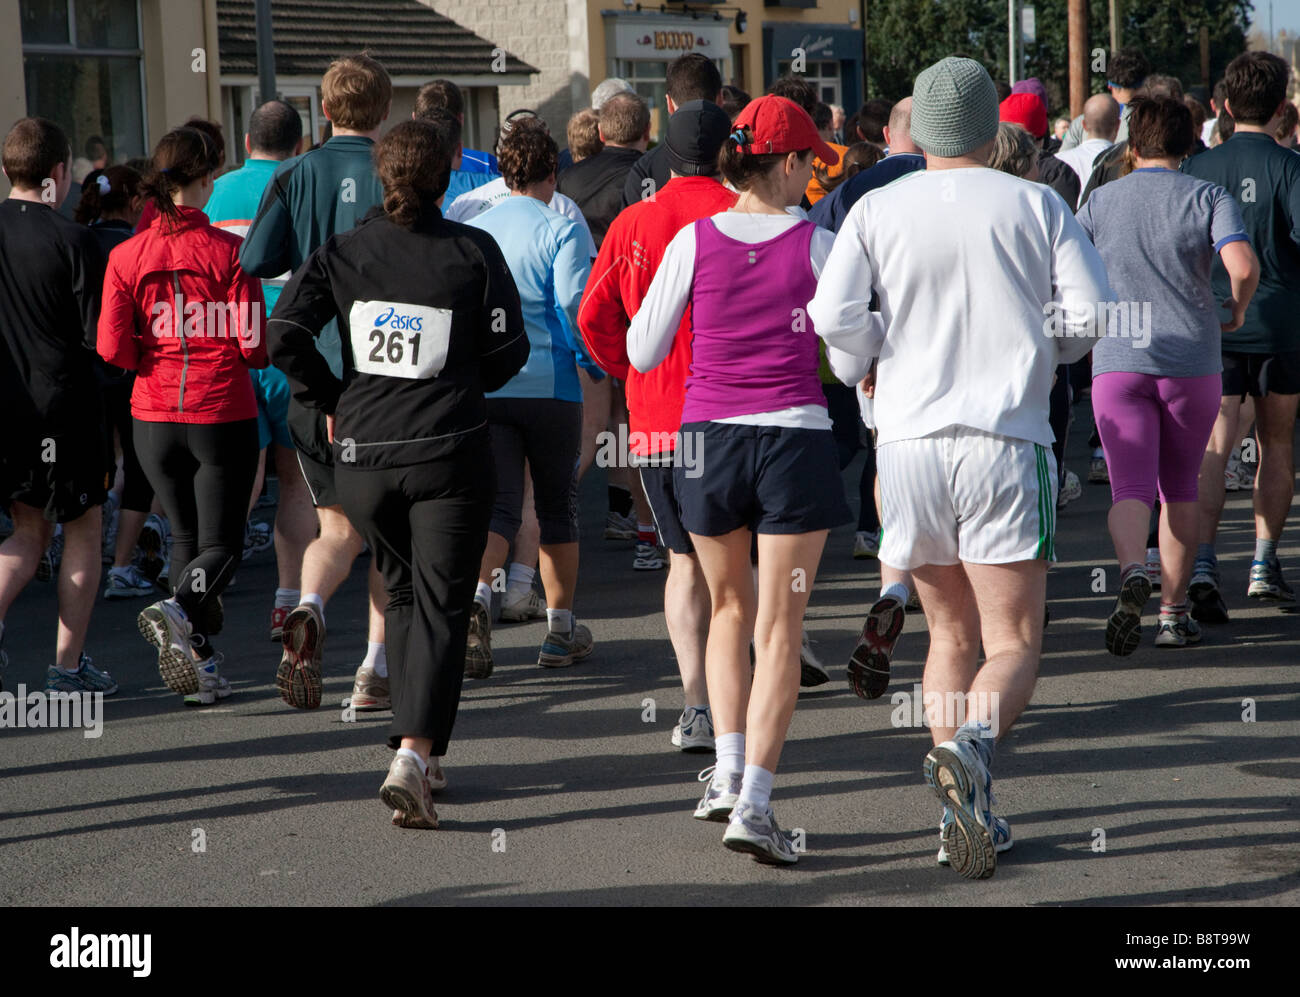 La caridad corredores en el inicio de la carrera de 10 kilómetros, Irlanda Foto de stock